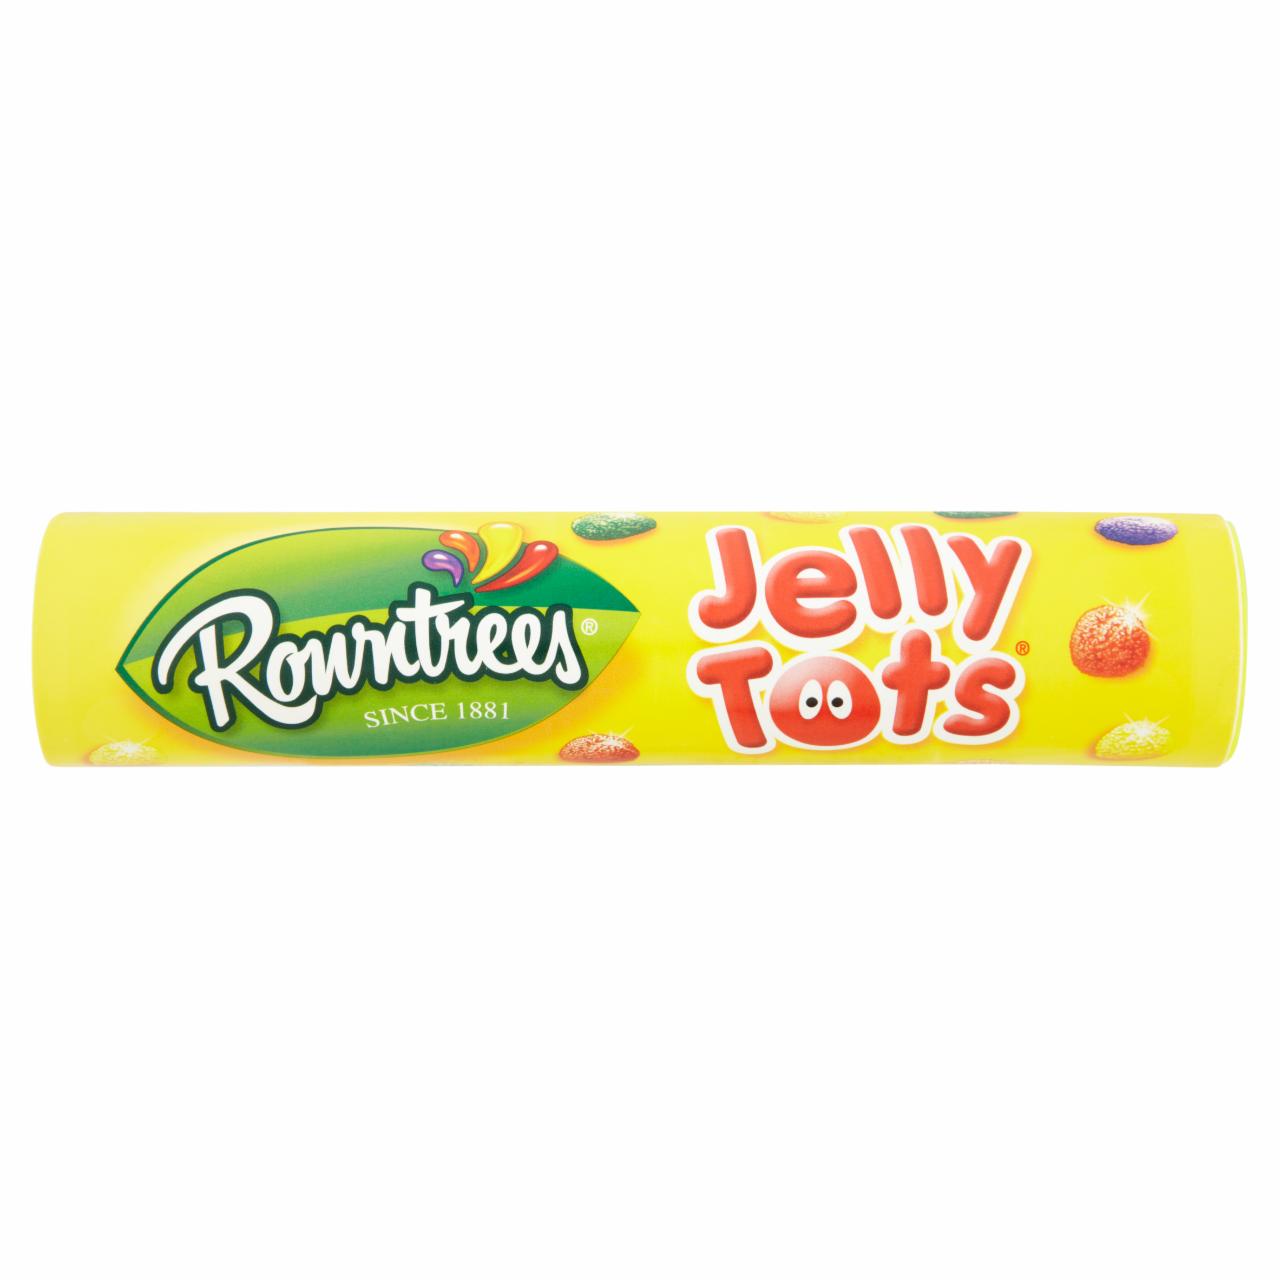 Képek - Rowntrees Jelly Tots gyümölcsízű zselé 130 g